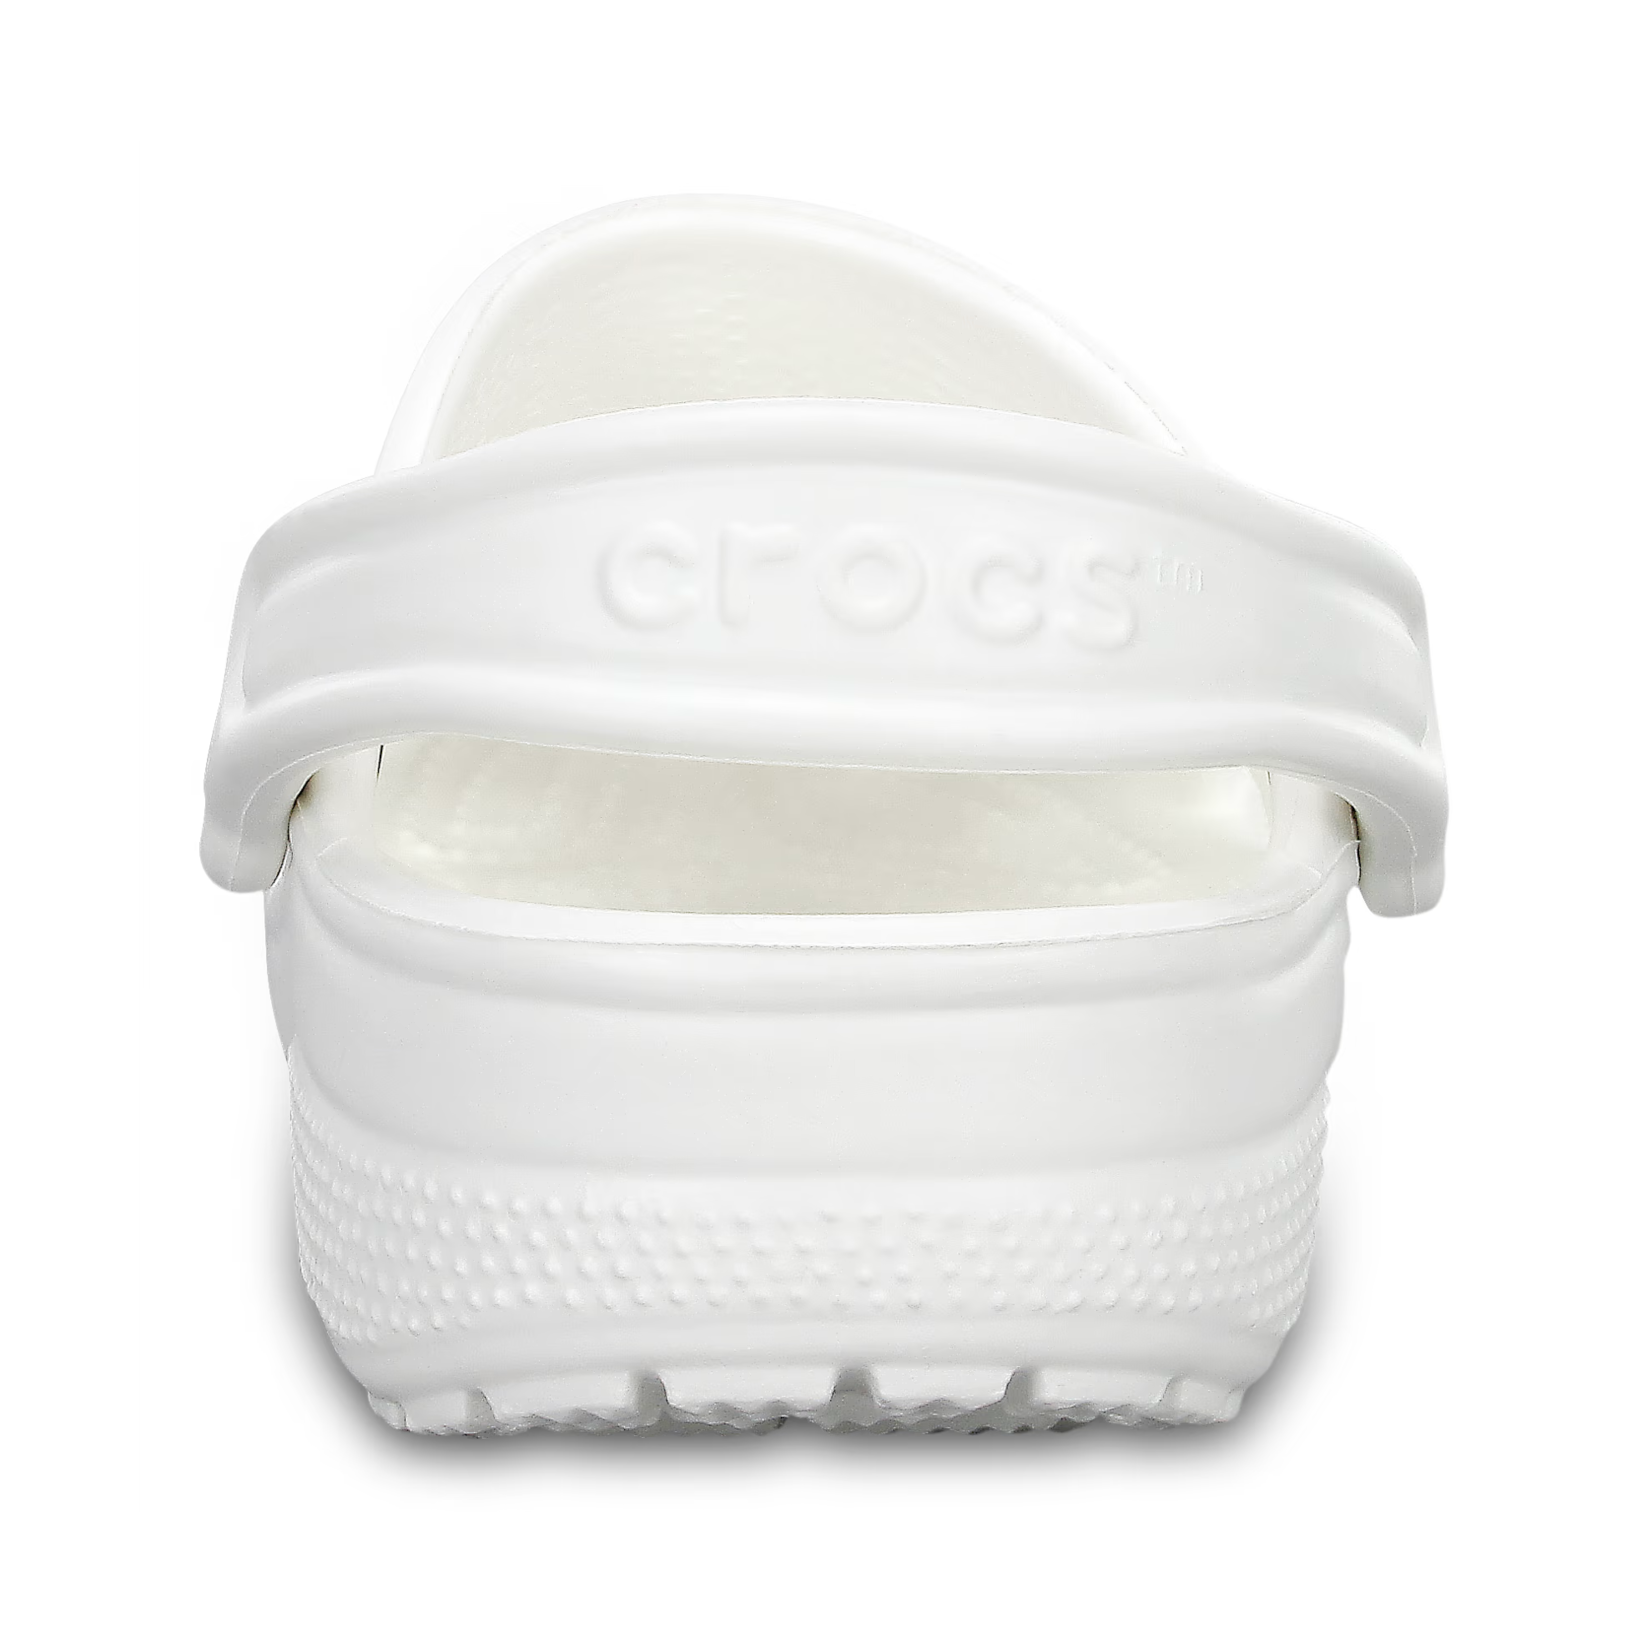 Crocs CROCS Classic Clog